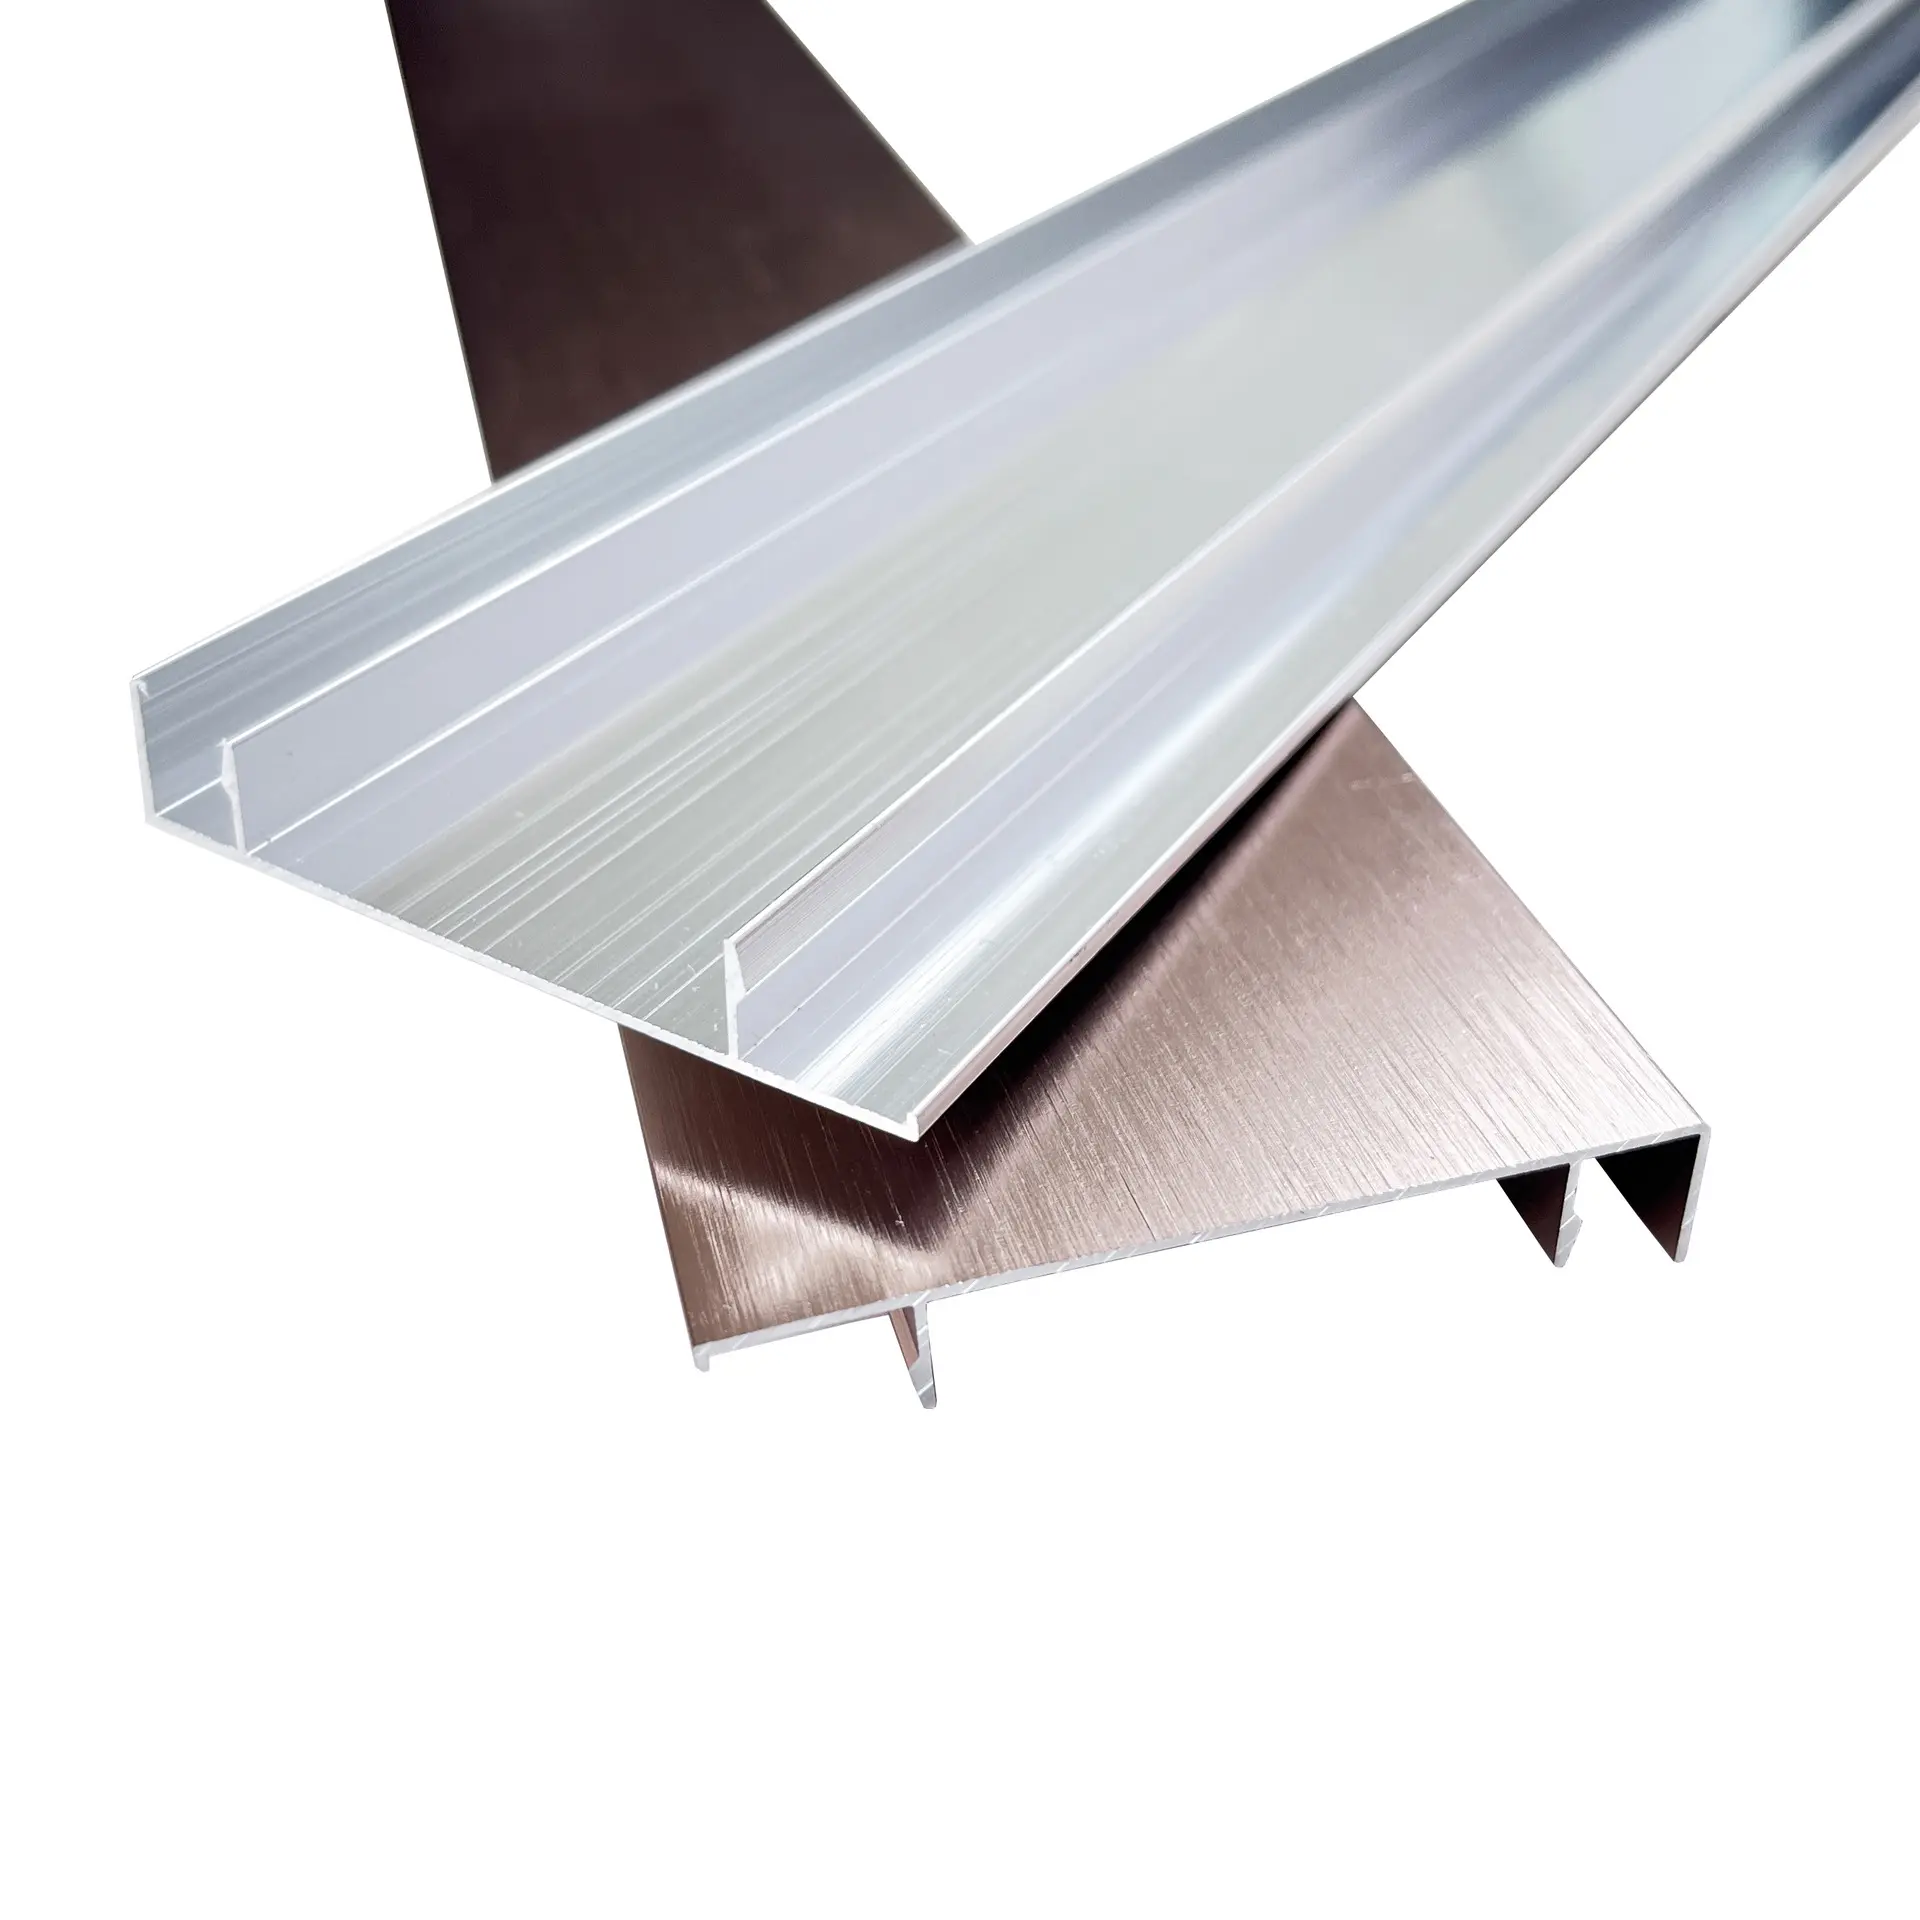 주요 제조 업체 스커트 보드 알루미늄 바닥 보호베이스 보드 유연한 타일 트림 현대 스커트 프로파일 핫 세일